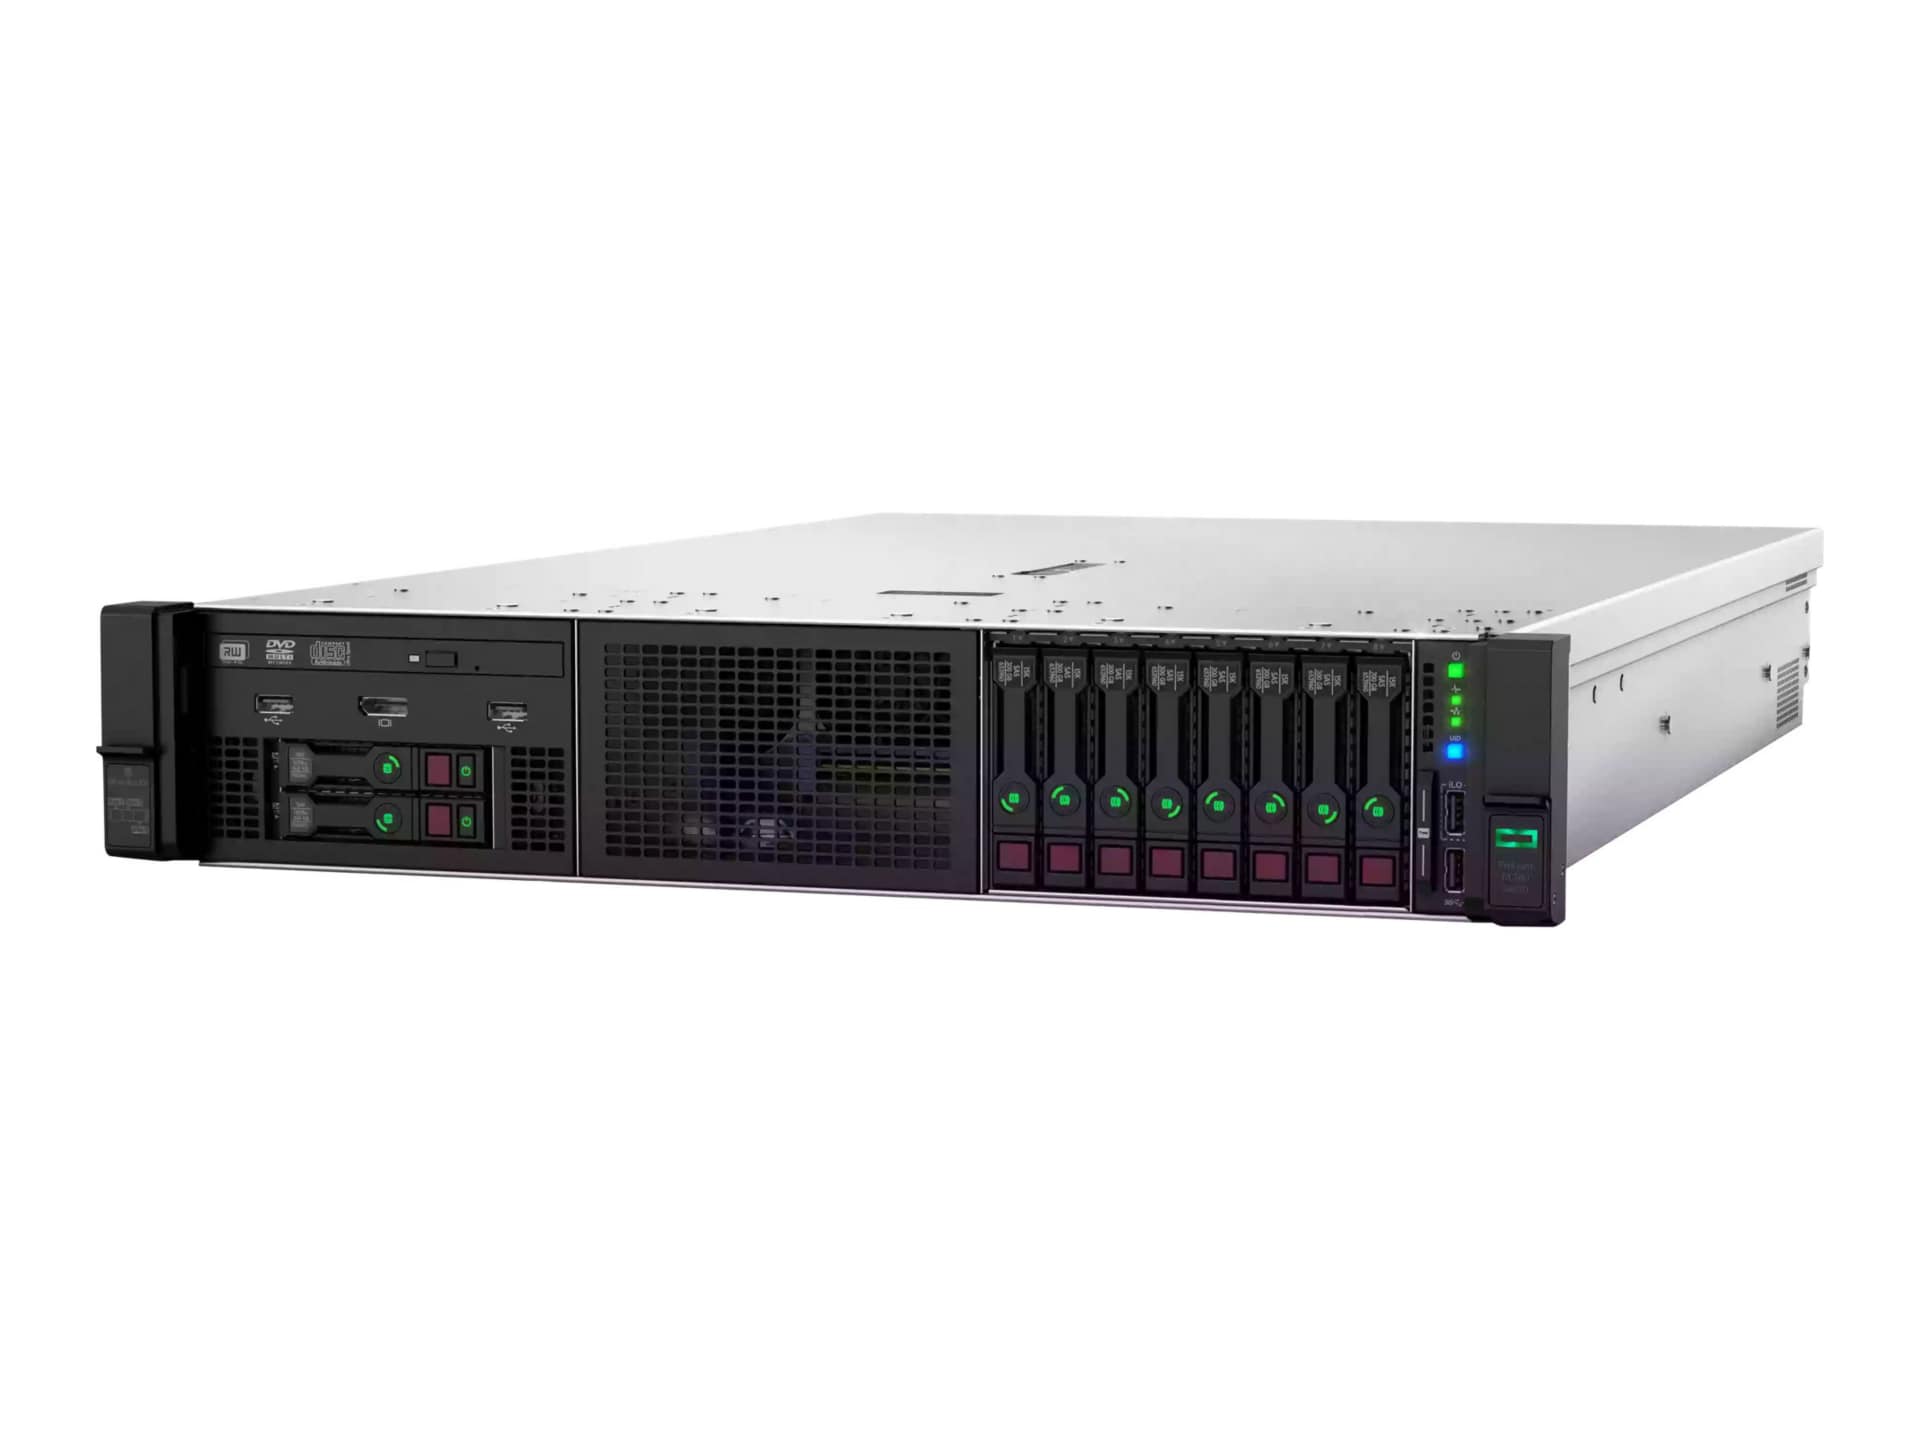 HPE ProLiant DL380 Gen10 Network Choice - rack-mountable - Xeon Silver 4215